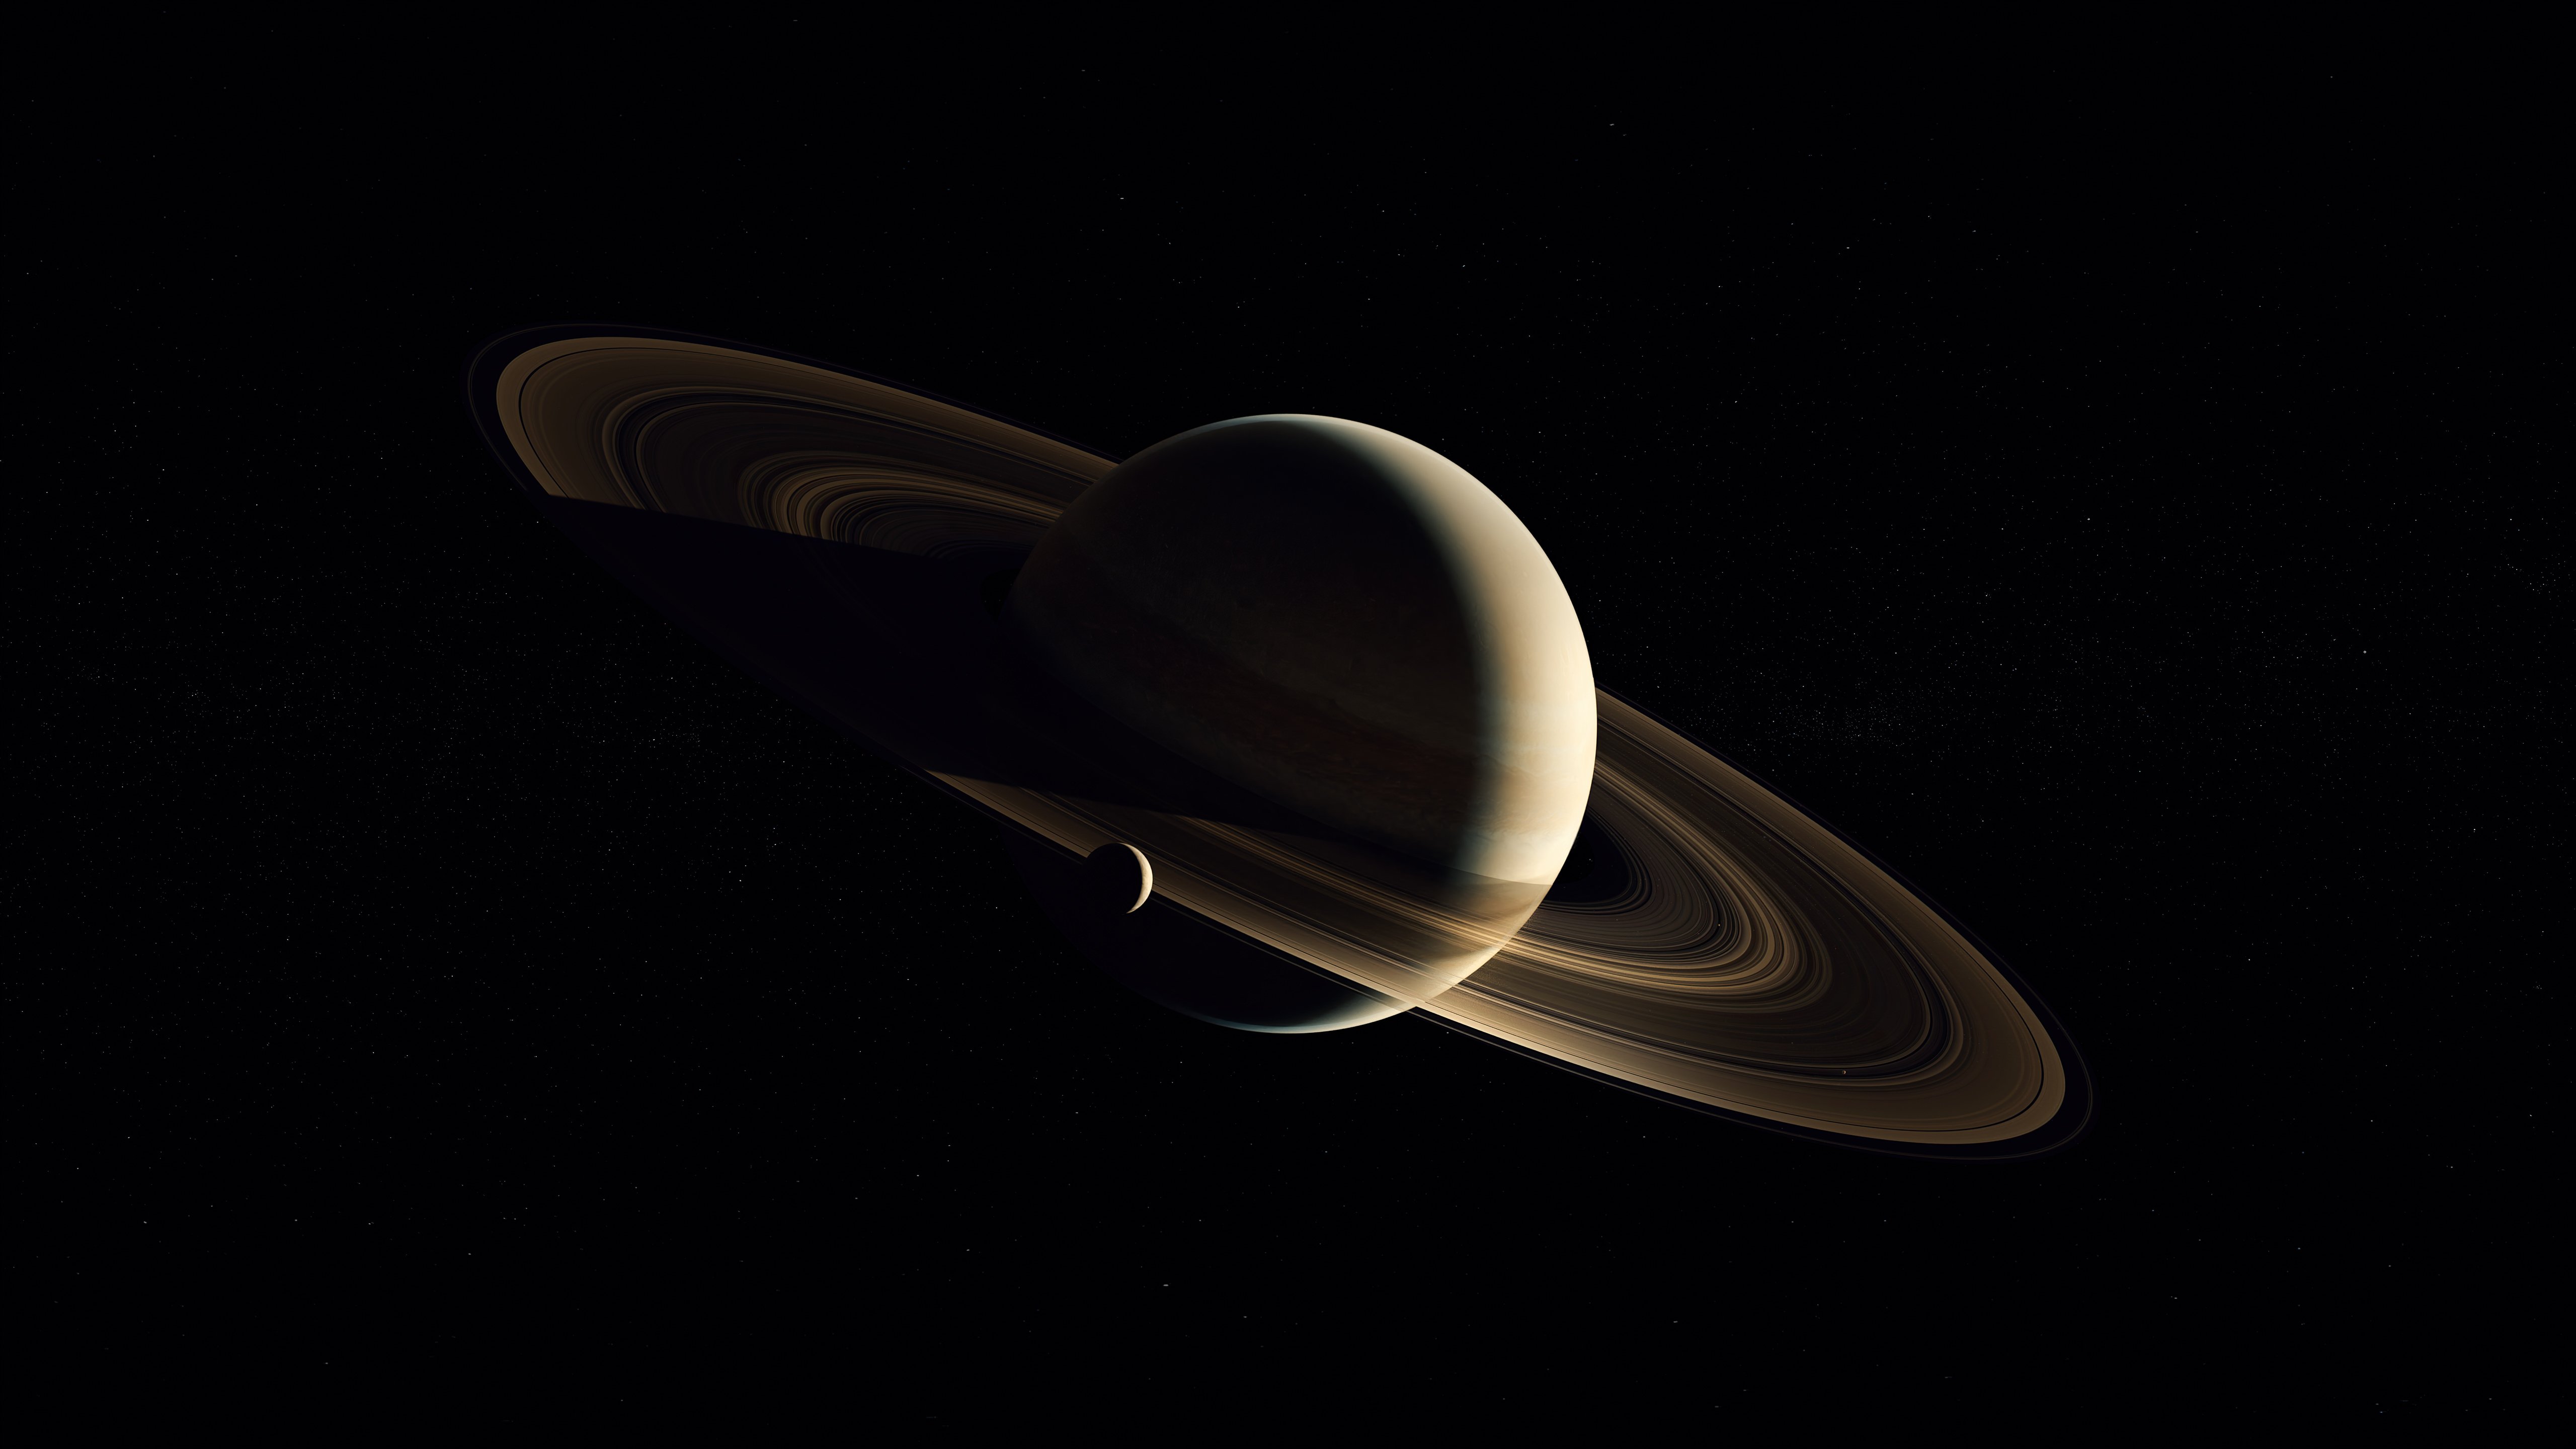 Fondos de pantalla Saturno en la oscuridad